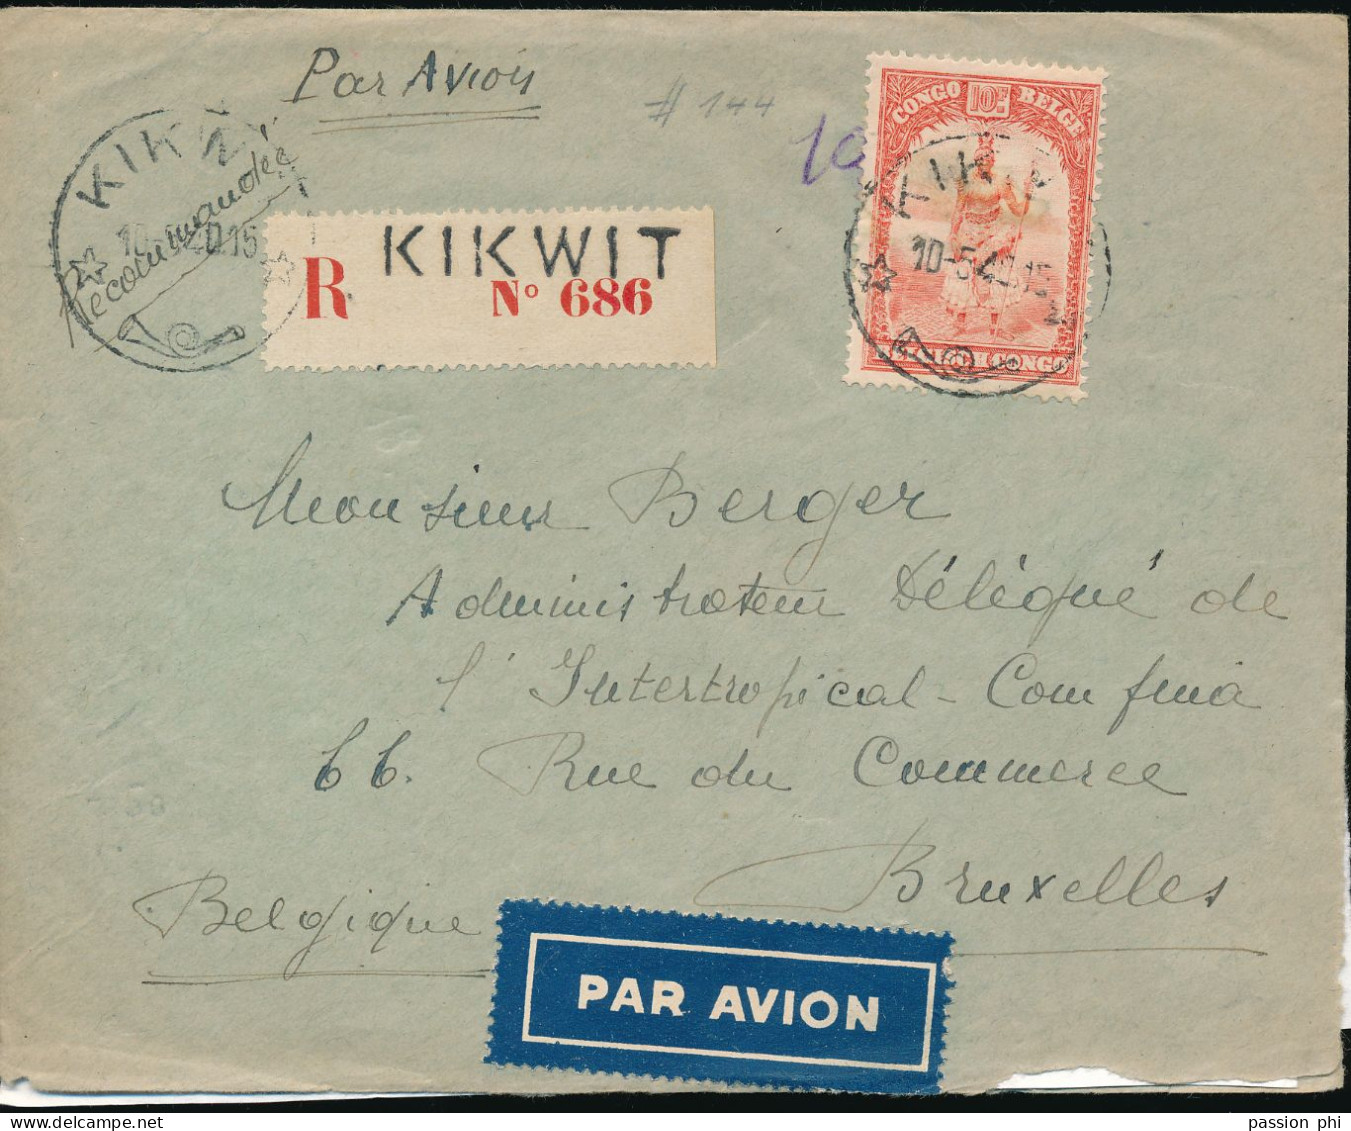 BELGIAN CONGO LETTRE RECOMMANDEE PAR AVION DE KIKWIT 10.05.40 (JOUR DE L'INVASION EN BELGIQUE) VERS BRUXELLES - Covers & Documents